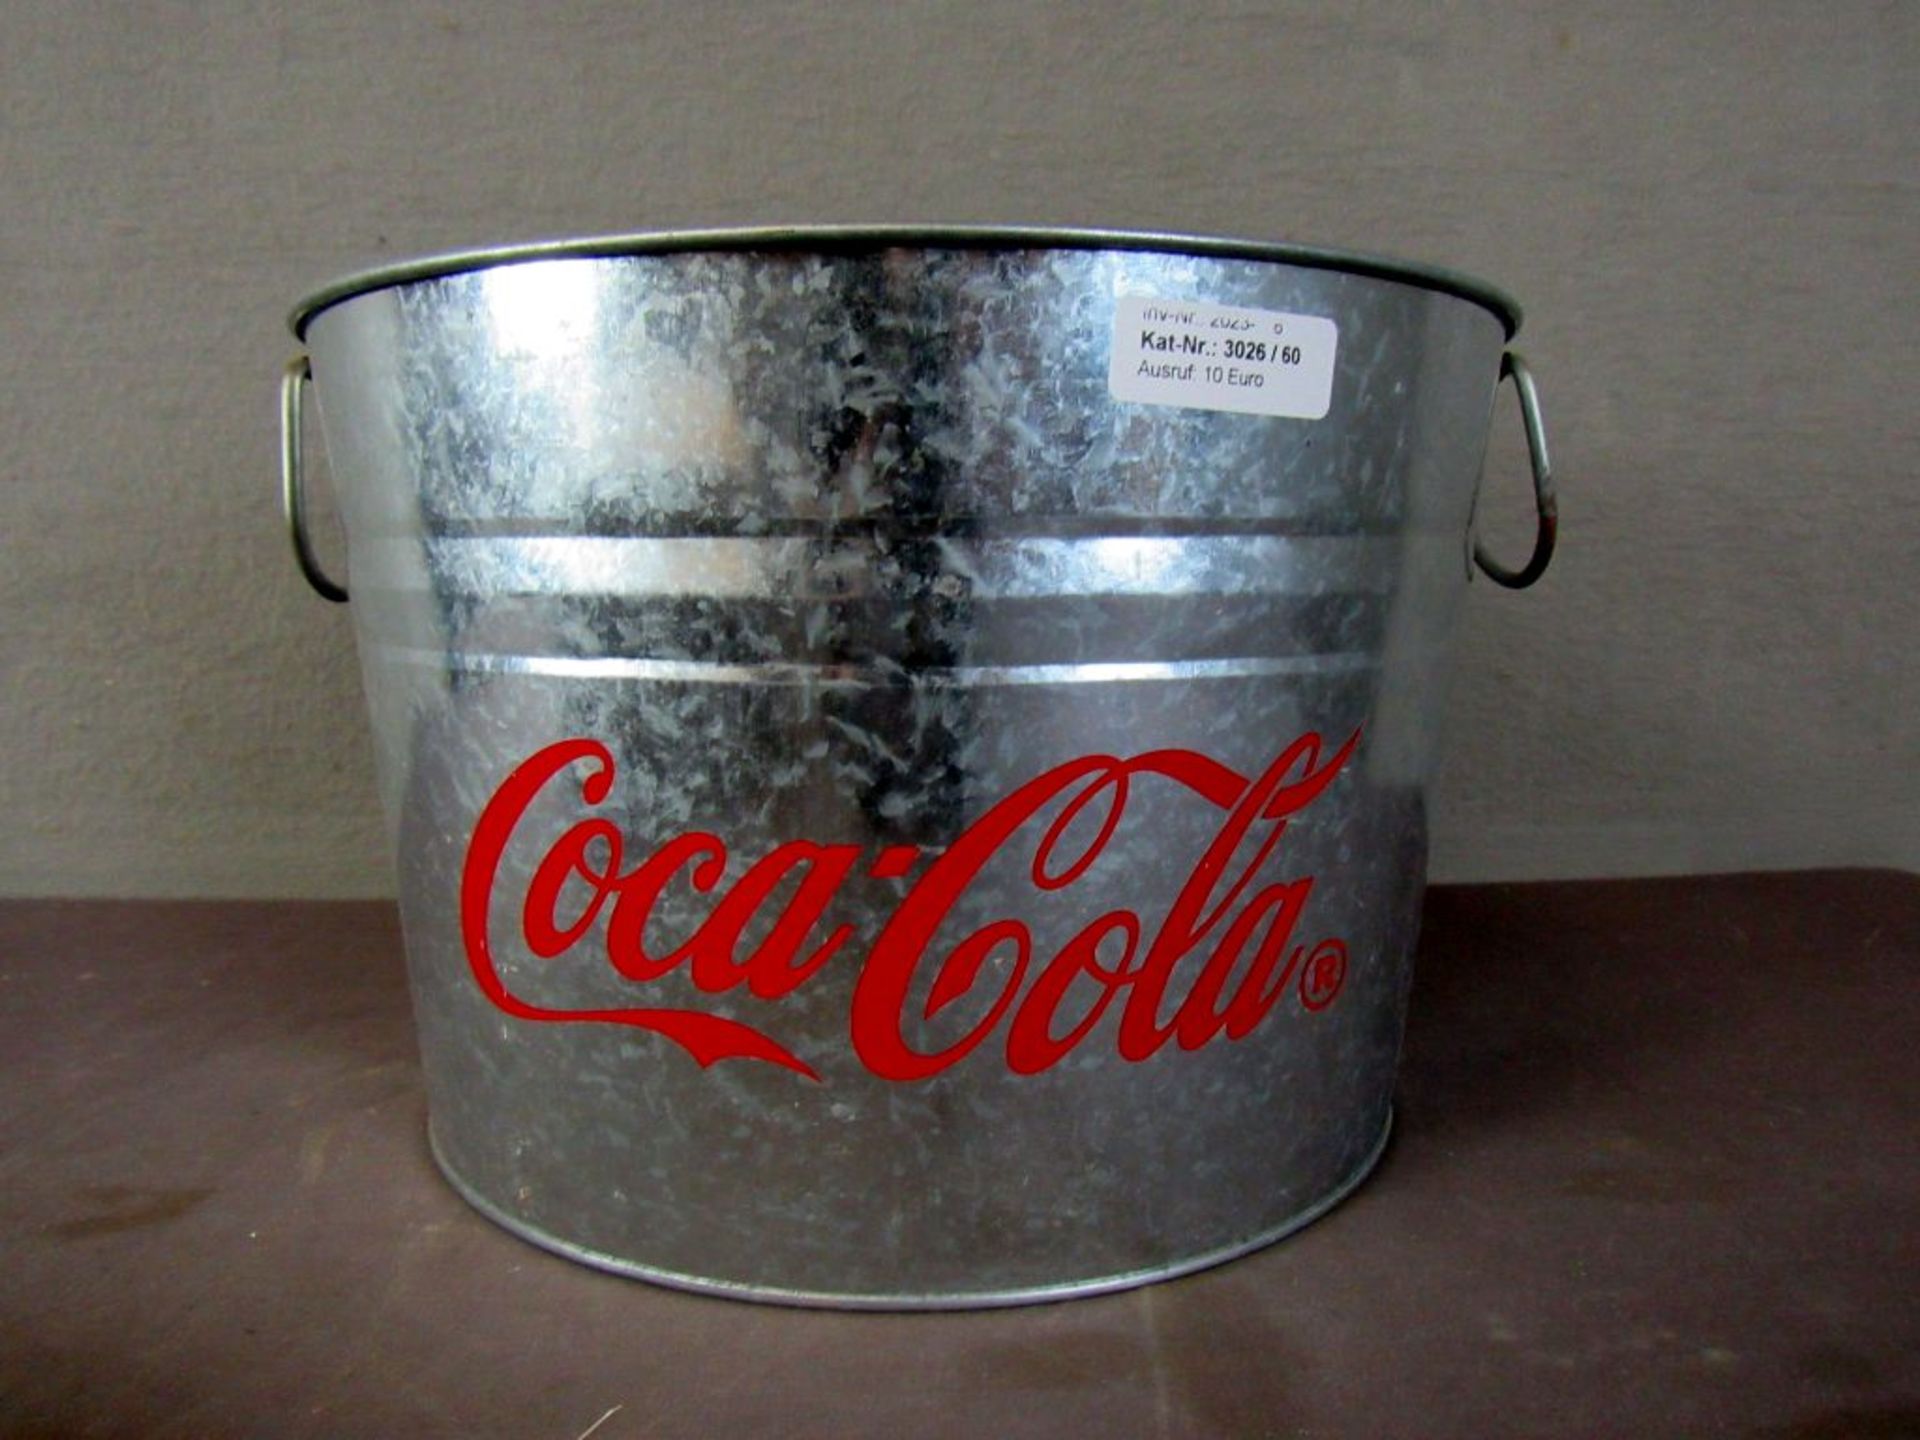 Großer Eiswürfelbehälter CocaCola Zink